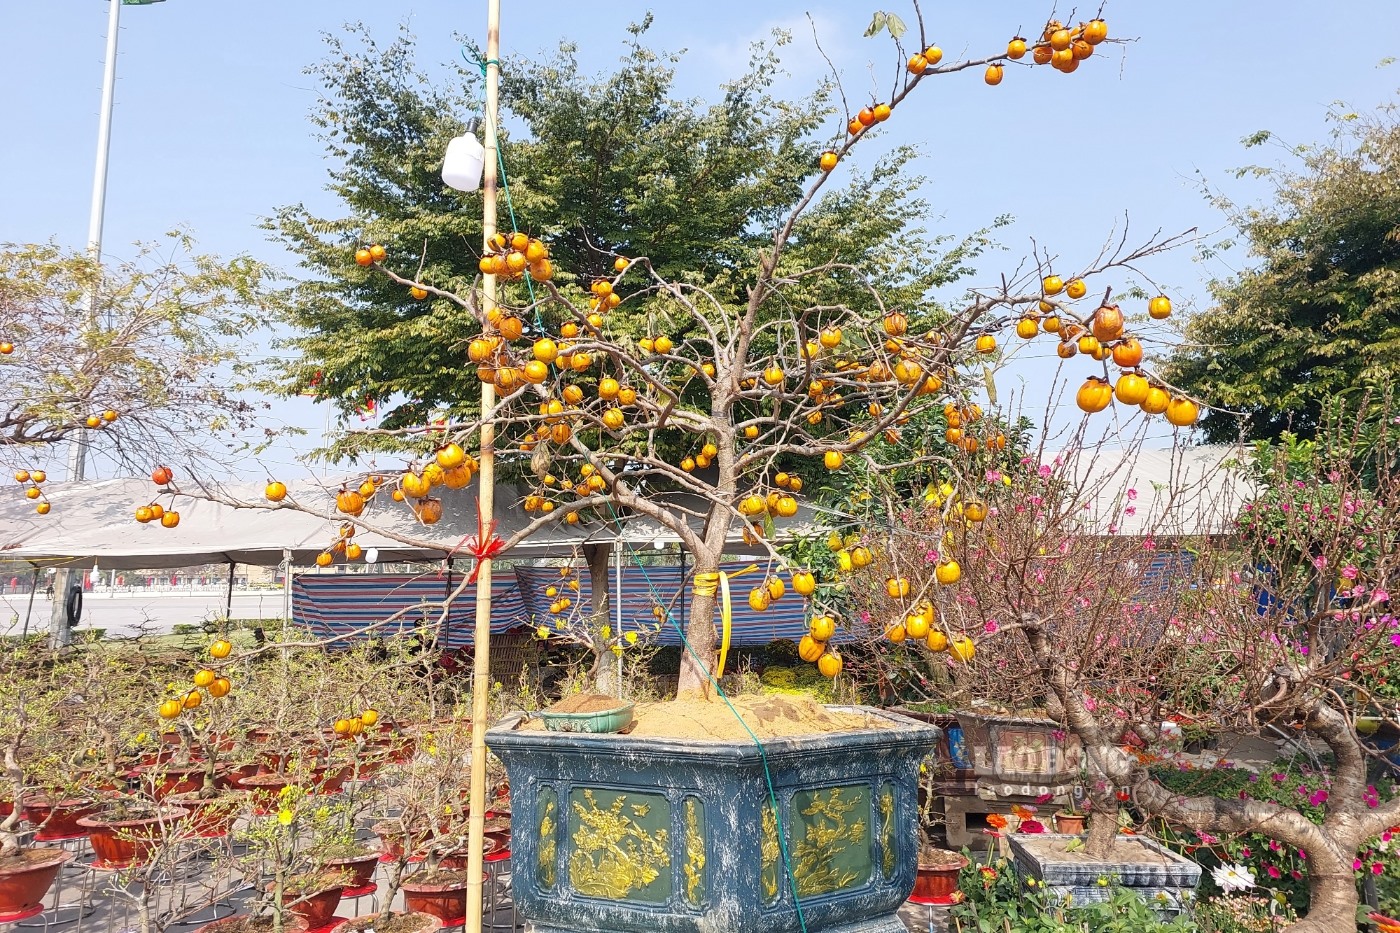 Ngoài các loại hoa, cây cảnh truyền thống như đào, mai, quất... tại chợ hoa Việt Trì còn rất nhiều loại hoa, cây cảnh khác như lan, Nhất Chi Mai, bưởi...